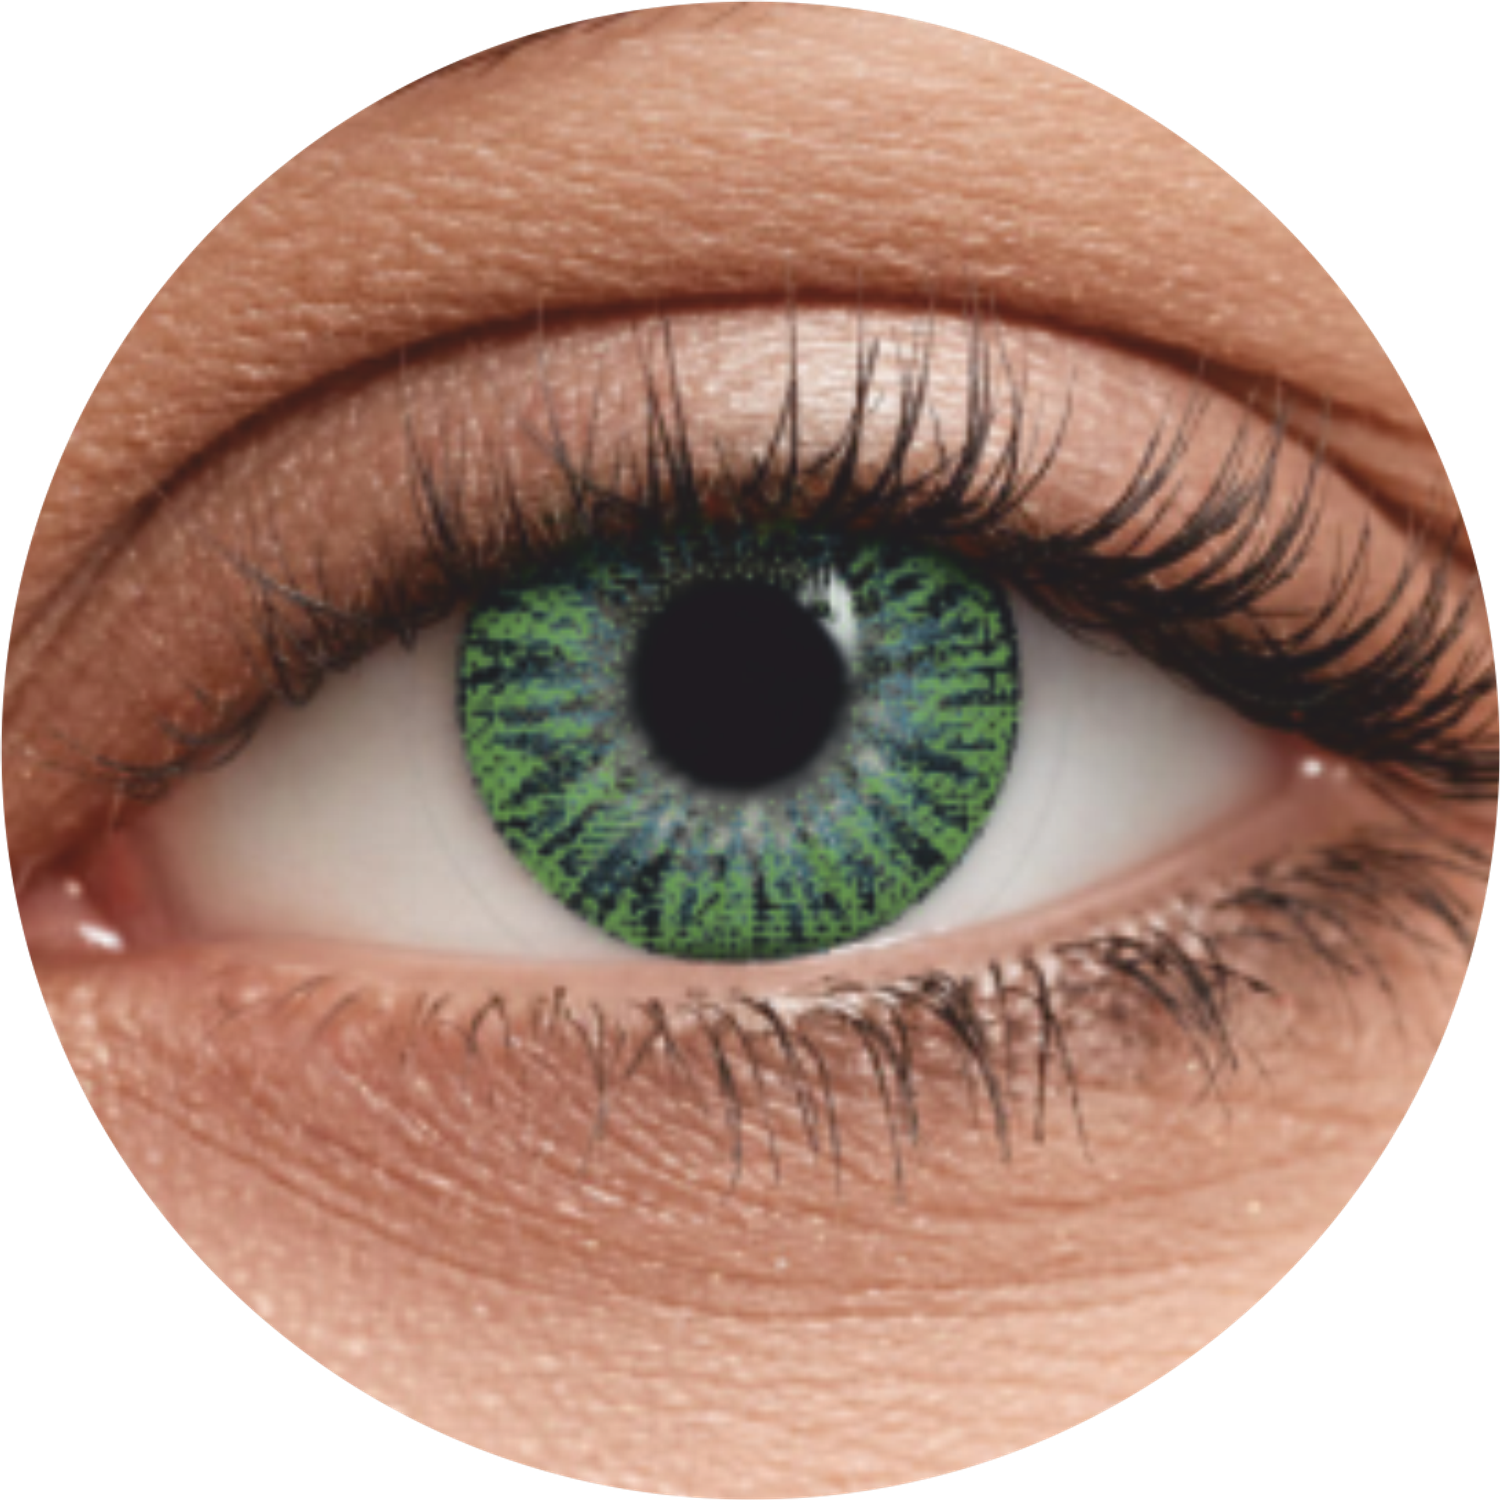 Цветные контактные линзы OKVision Fusion monthly R 8.6 -5.00 цвет Lime 2 шт 1 месяц - фото 2